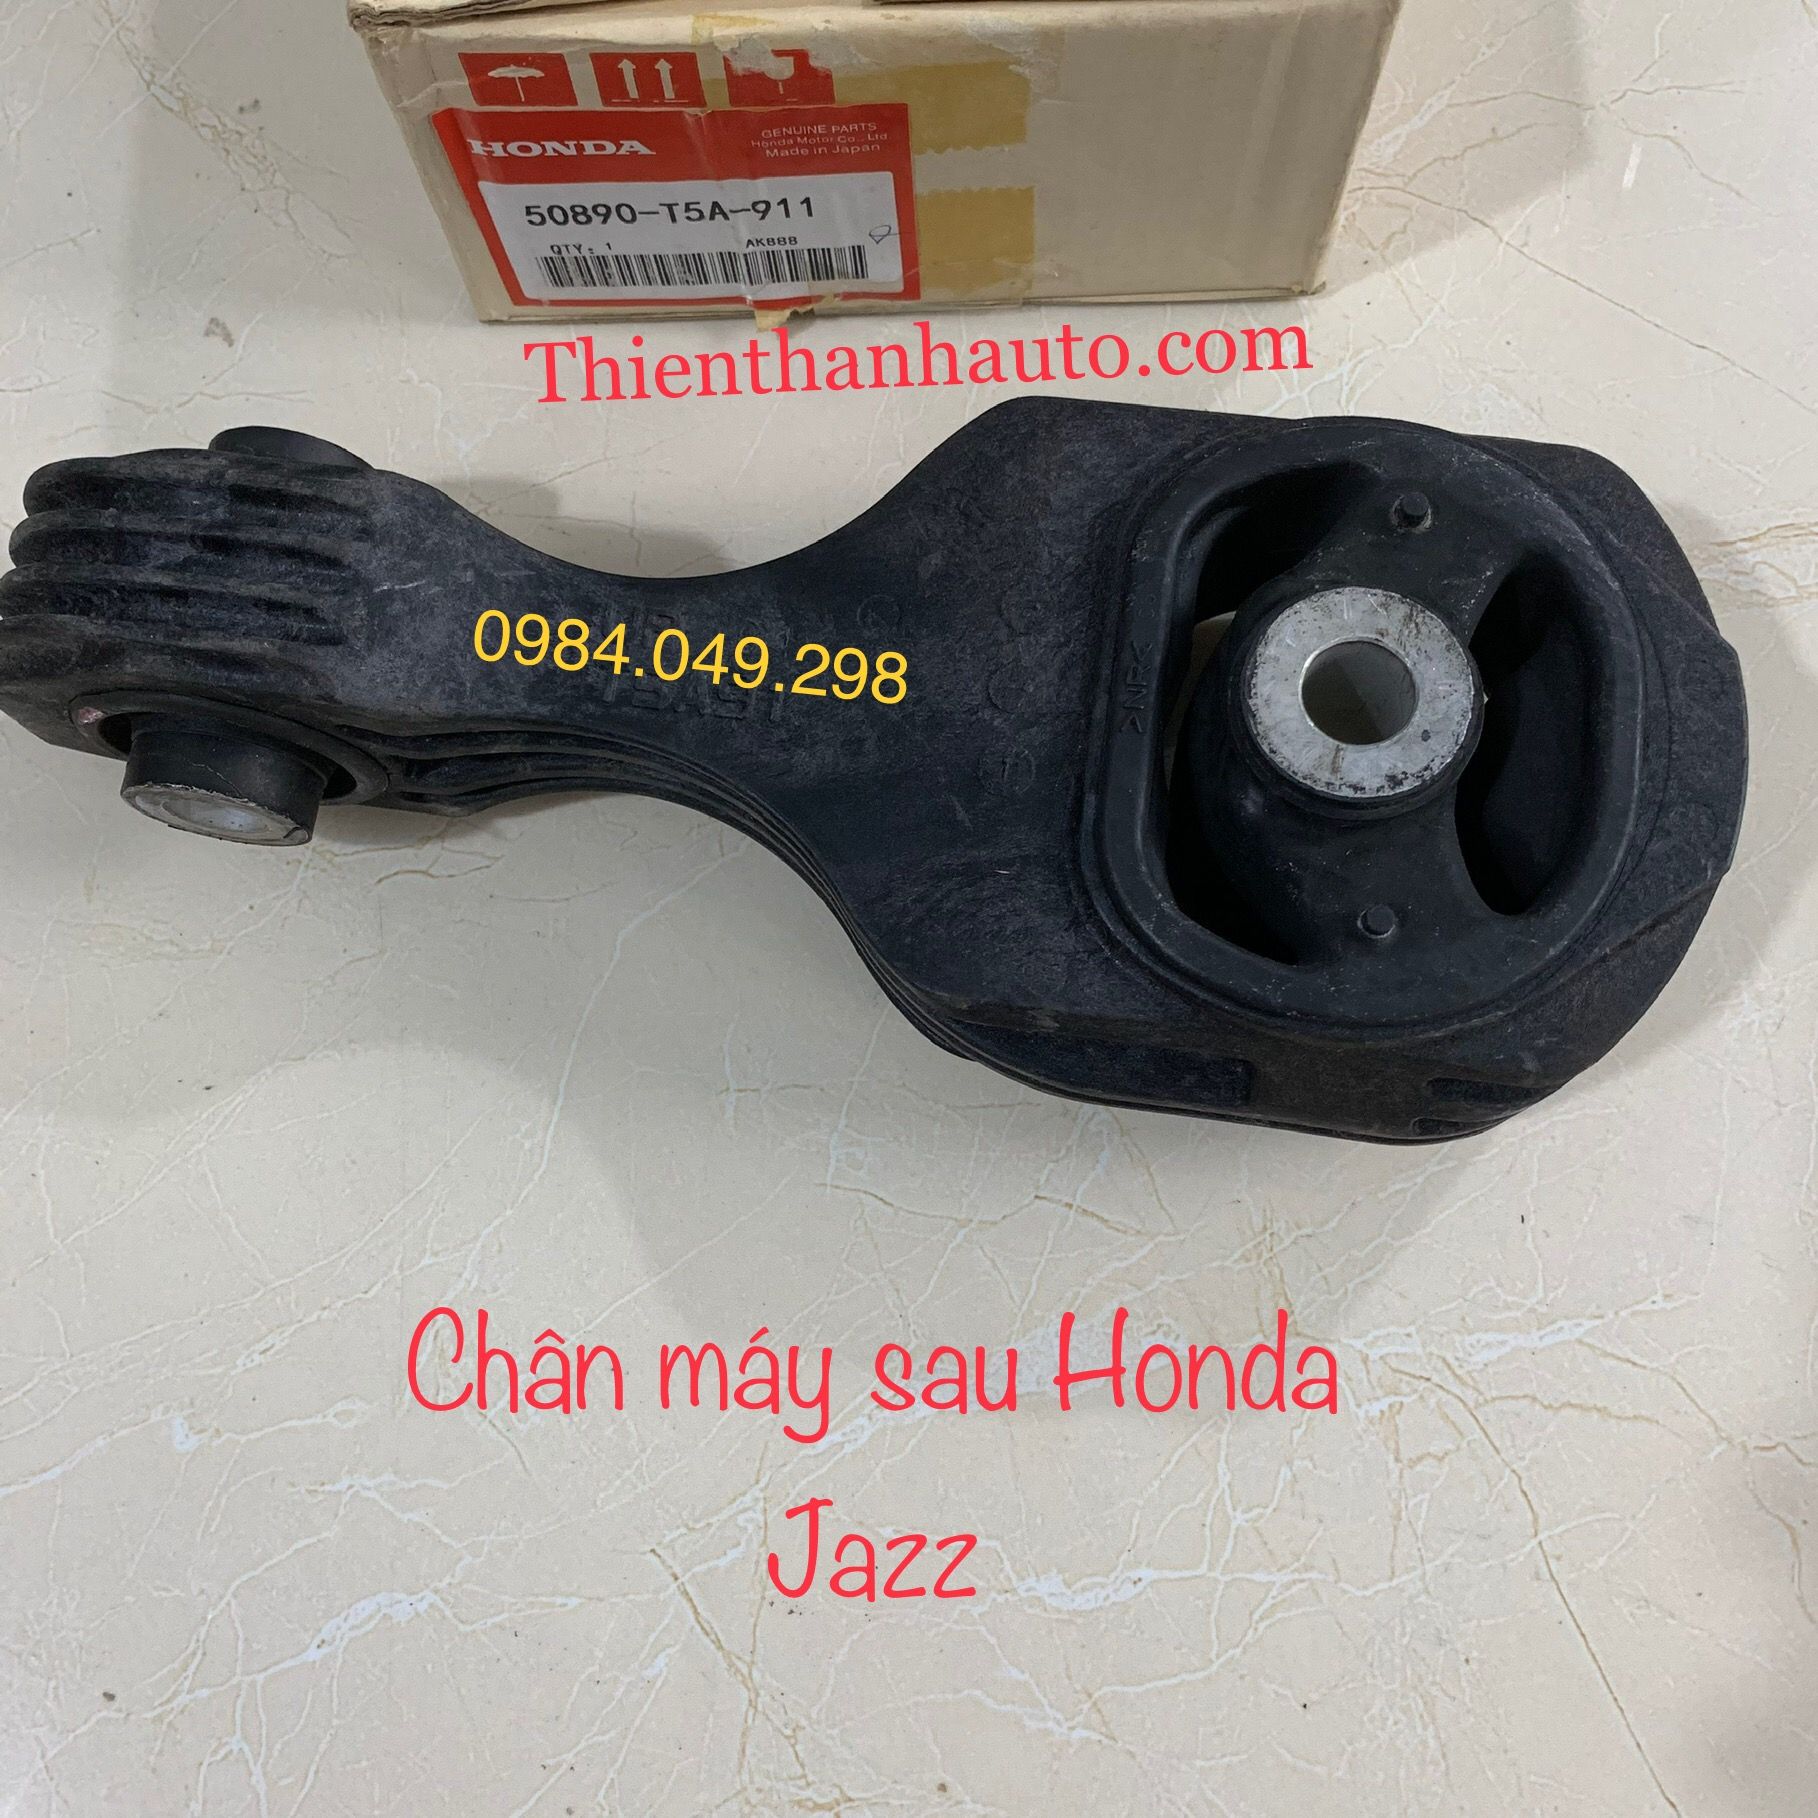 Chân máy sau Honda Jazz - Xuất xứ Nhật Bản - 50890T5A911- Tel: 0984.049.298